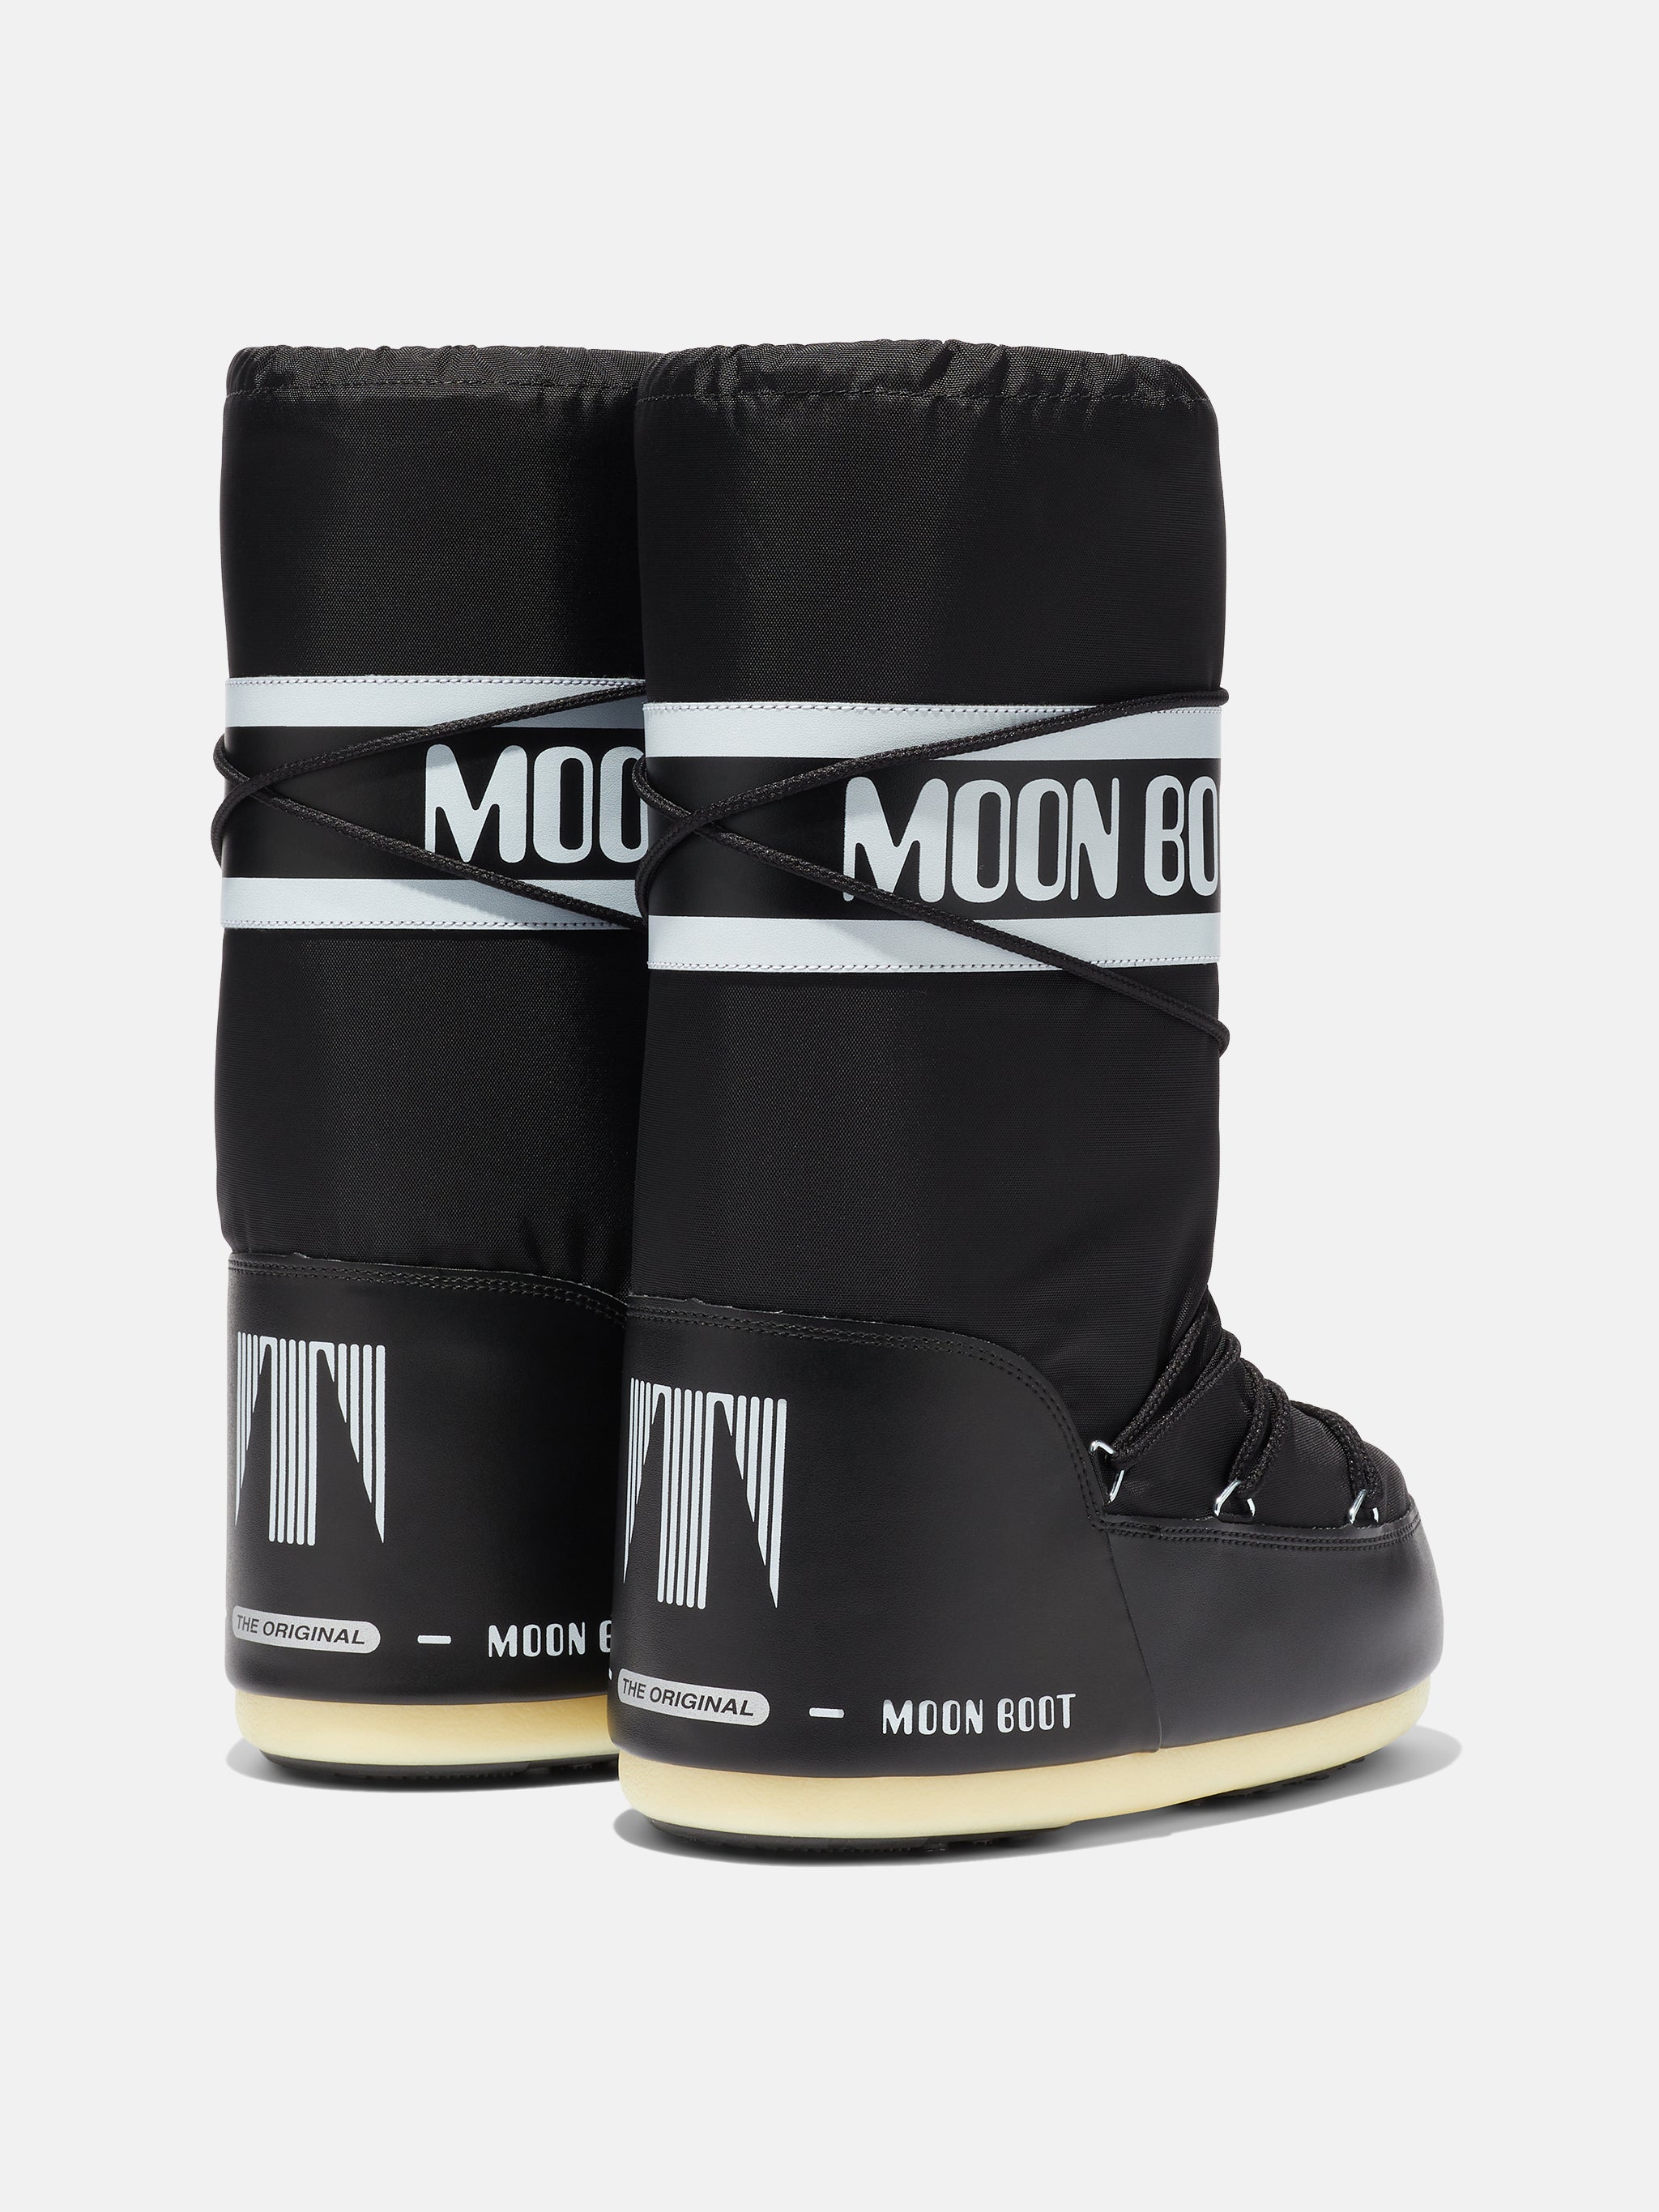 Универсальные Moon boots от FABRIC 13 Стоимость 3500 rub. Размеры : 38-39 /  40-41 / 42-43 / 44-45 маломерят на 1-2 размера Наши…